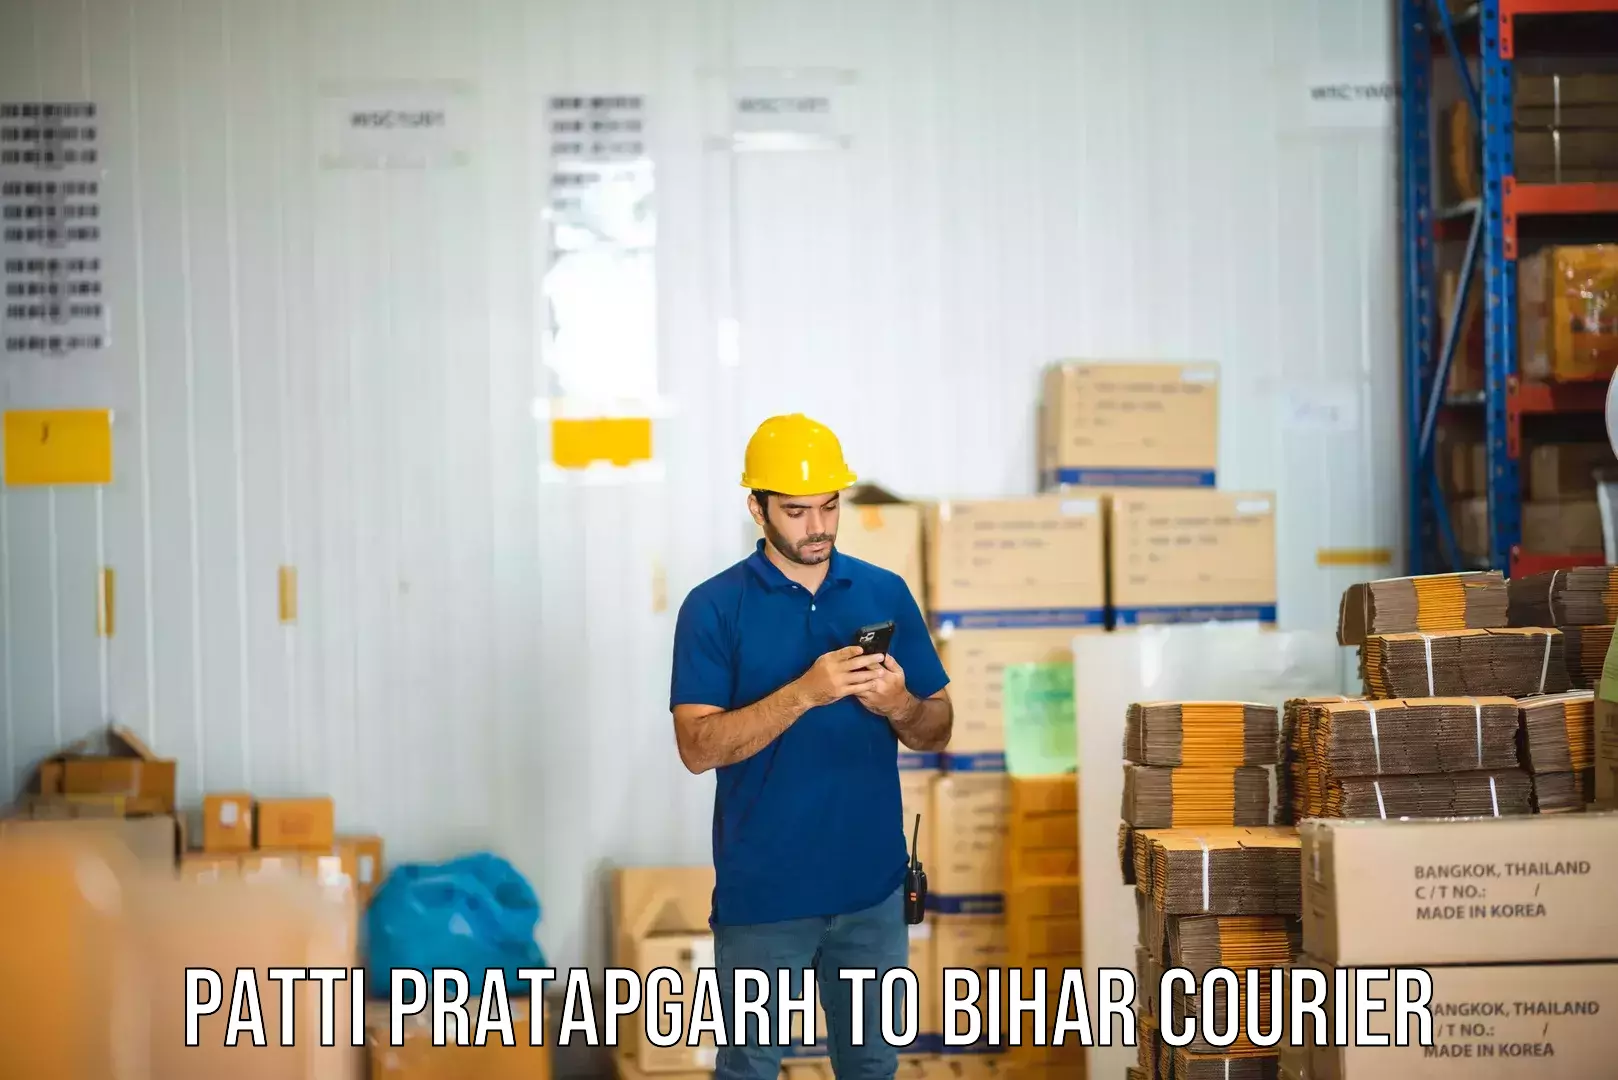 Efficient parcel delivery Patti Pratapgarh to Bhojpur